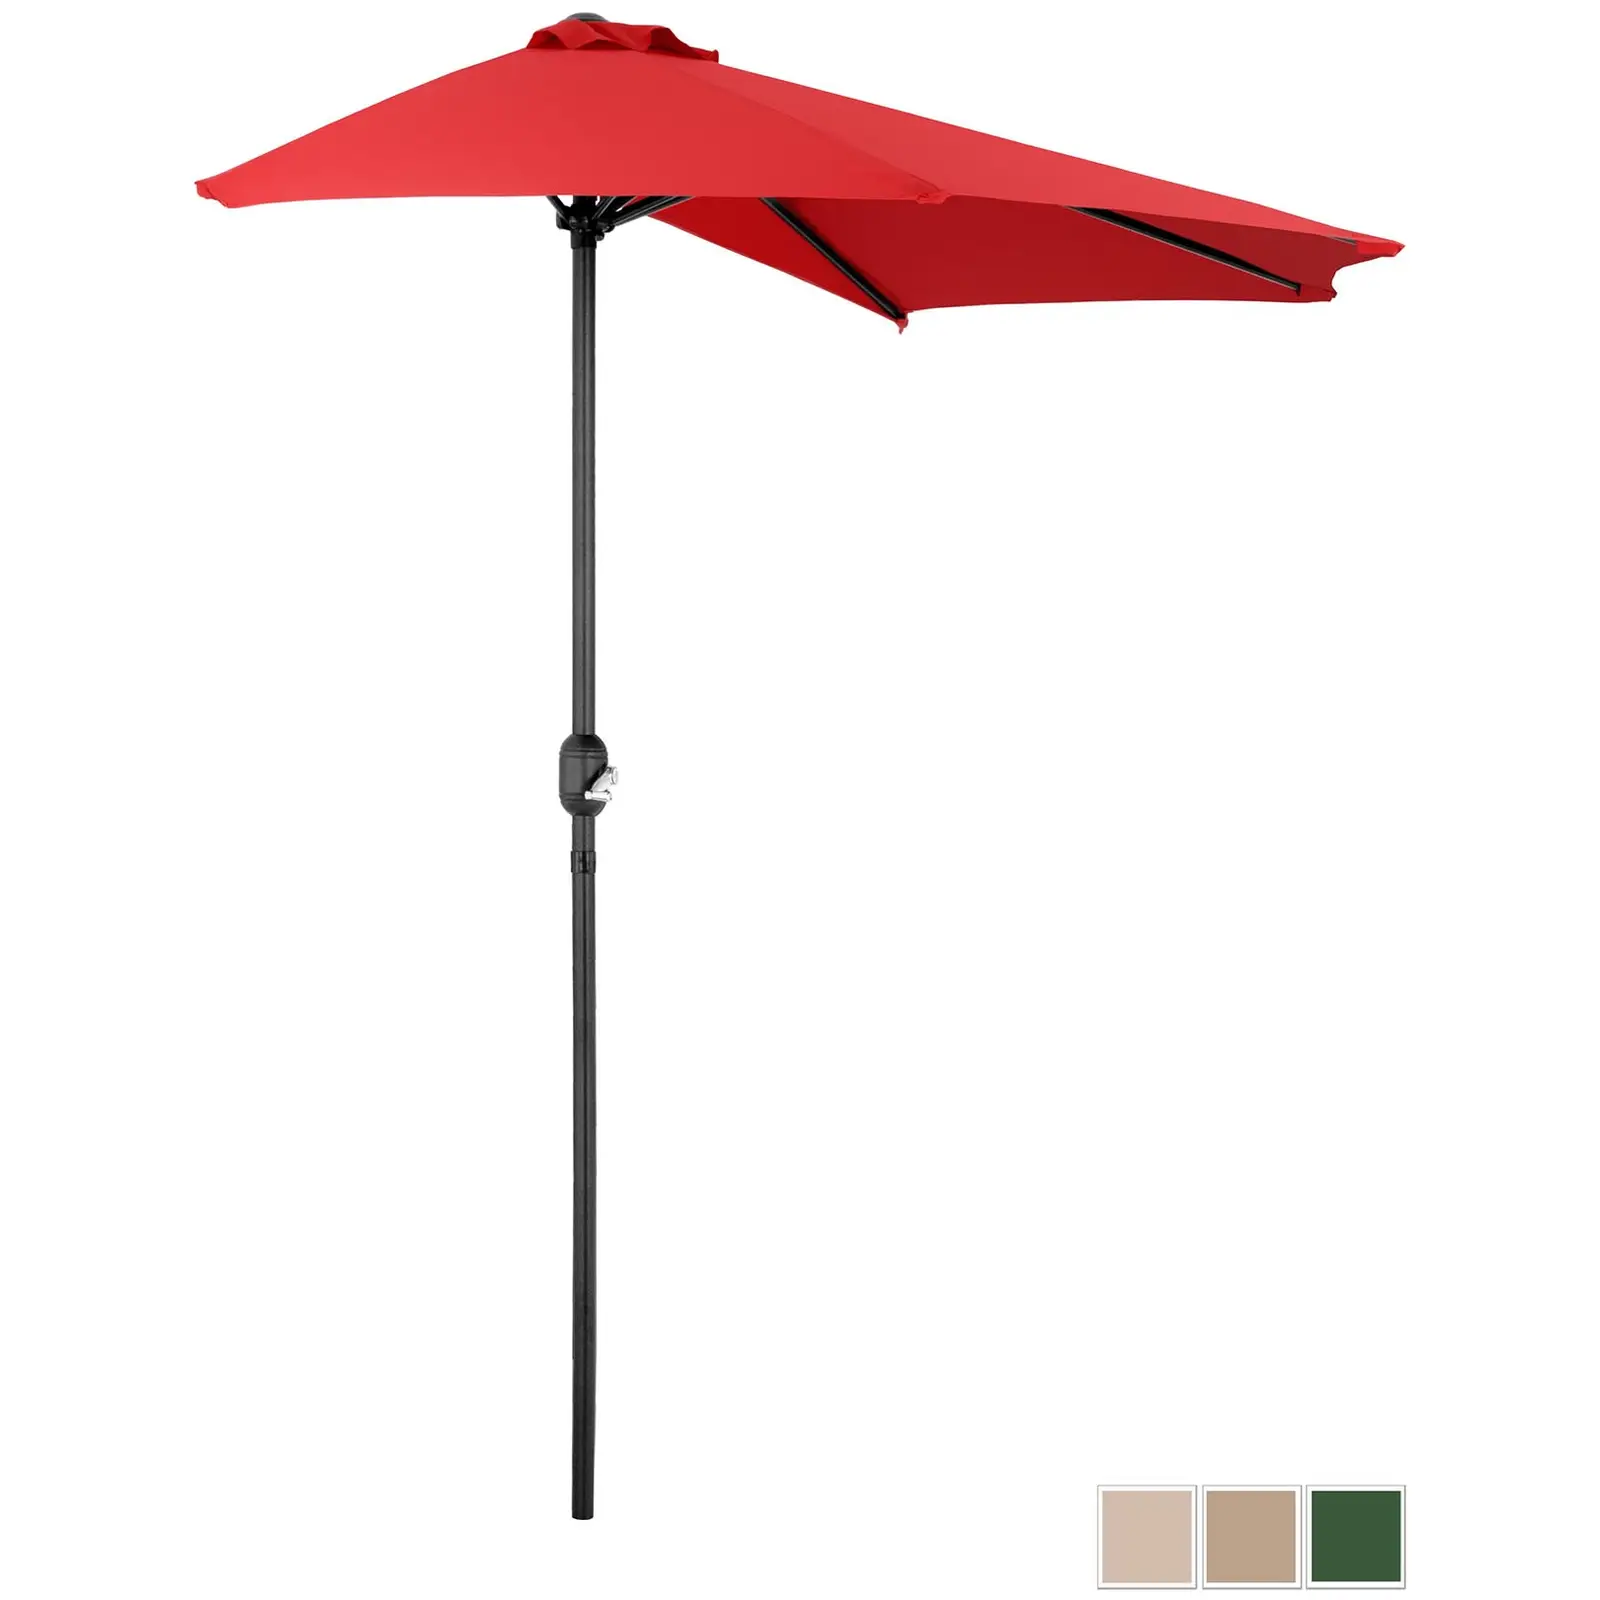 Aurinkovarjo puolikas - punainen - viisikulmainen - 270 x 135 cm